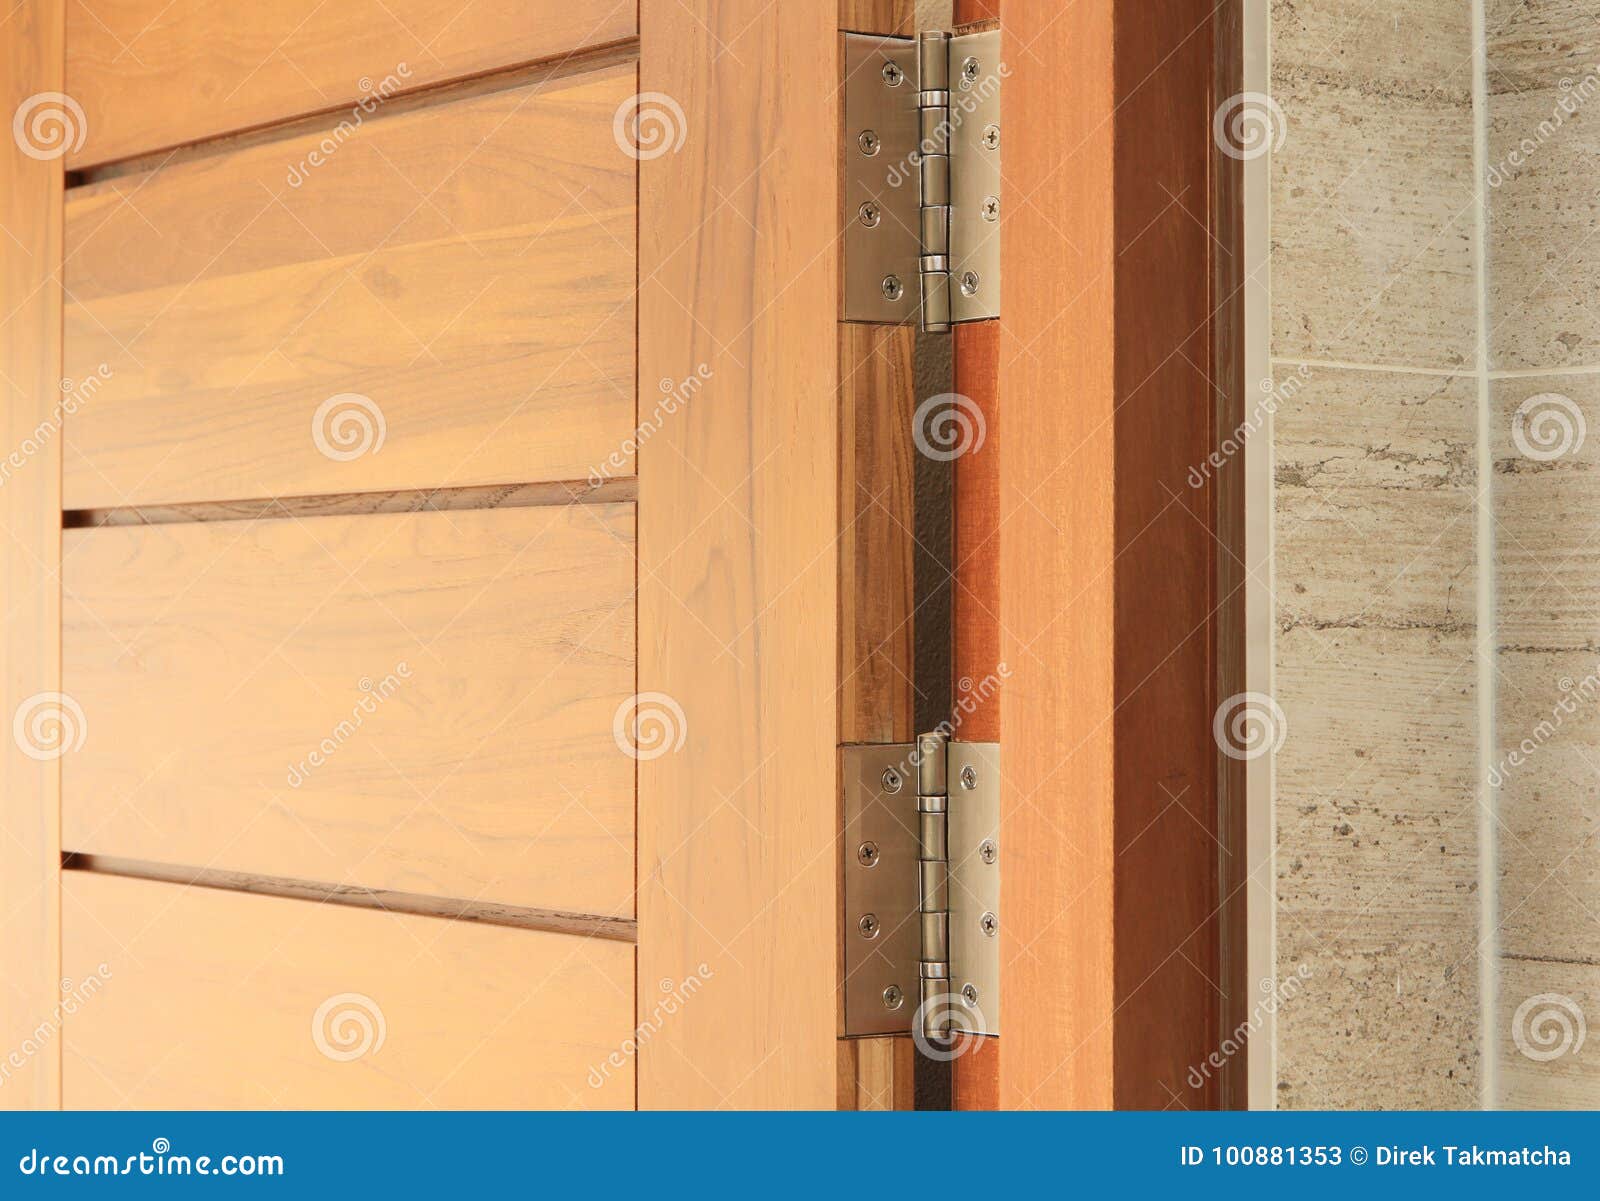 wooden door with hinge